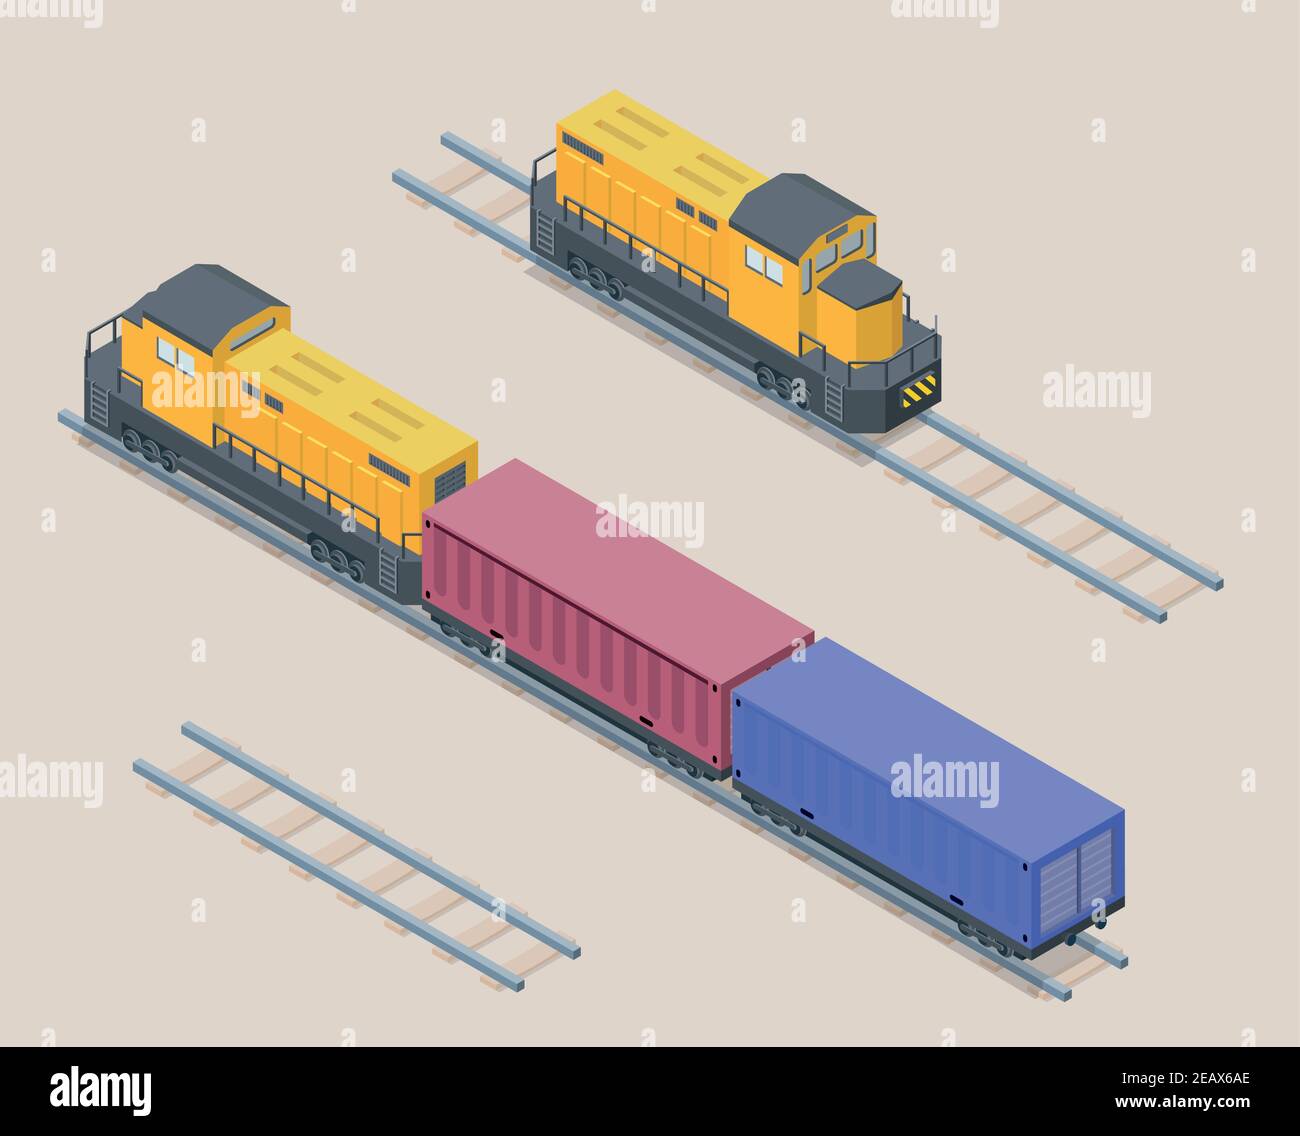 Vektor isometrische Abbildung der gelben Güterzug mit roten und blauen Containern. Eisenbahnelemente. Vorder- und Rückseite der Lokomotive. Stock Vektor